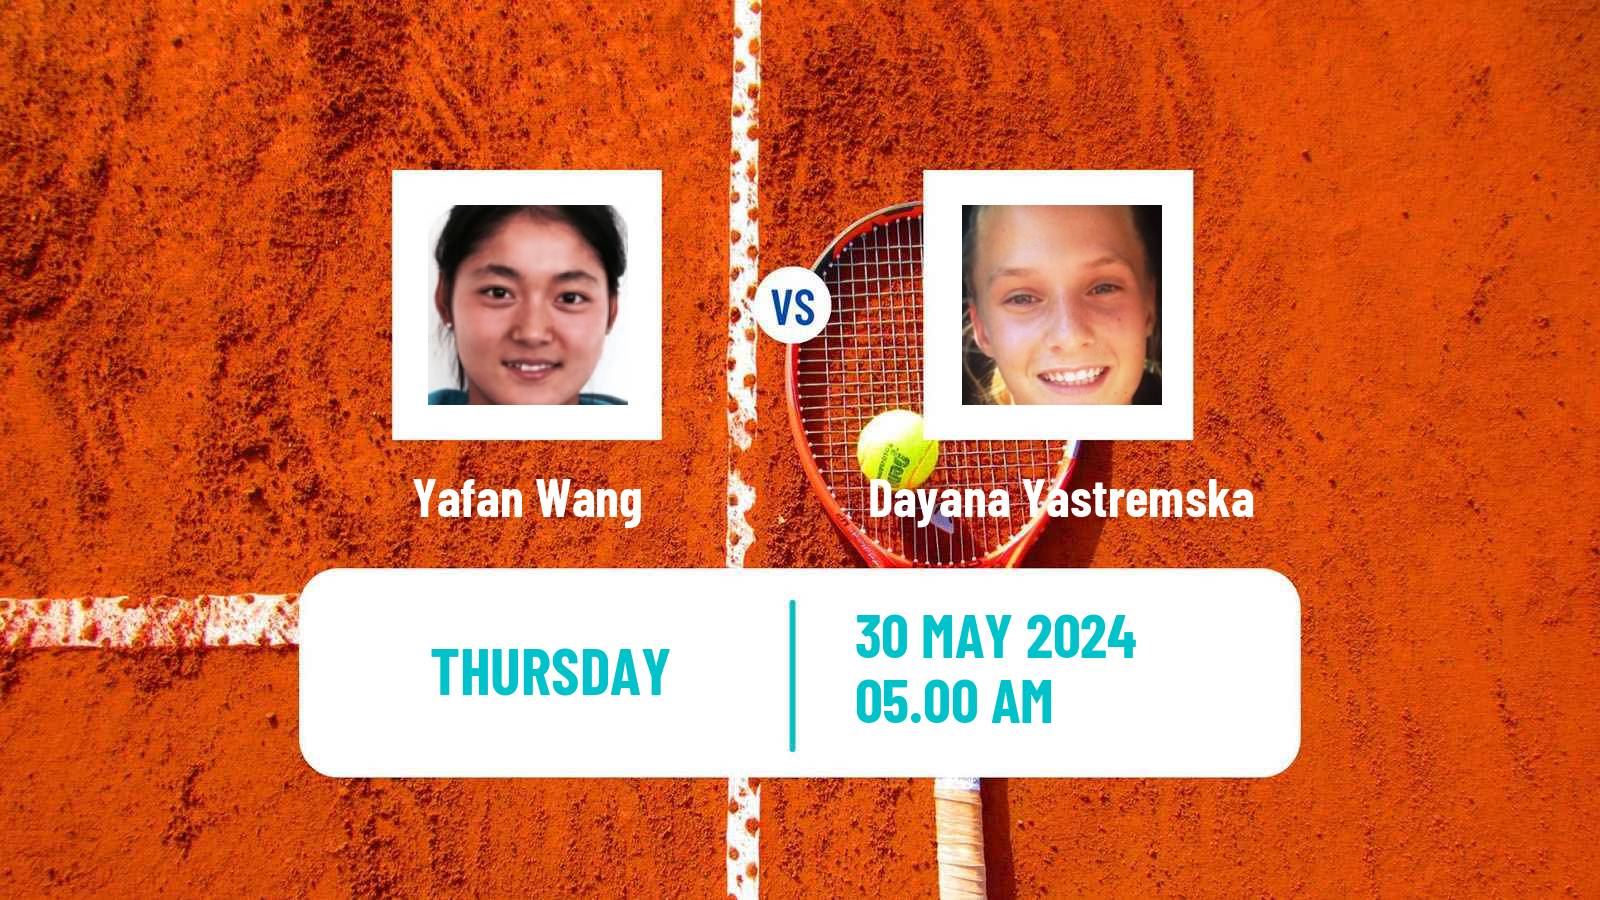 Tennis WTA Roland Garros Yafan Wang - Dayana Yastremska